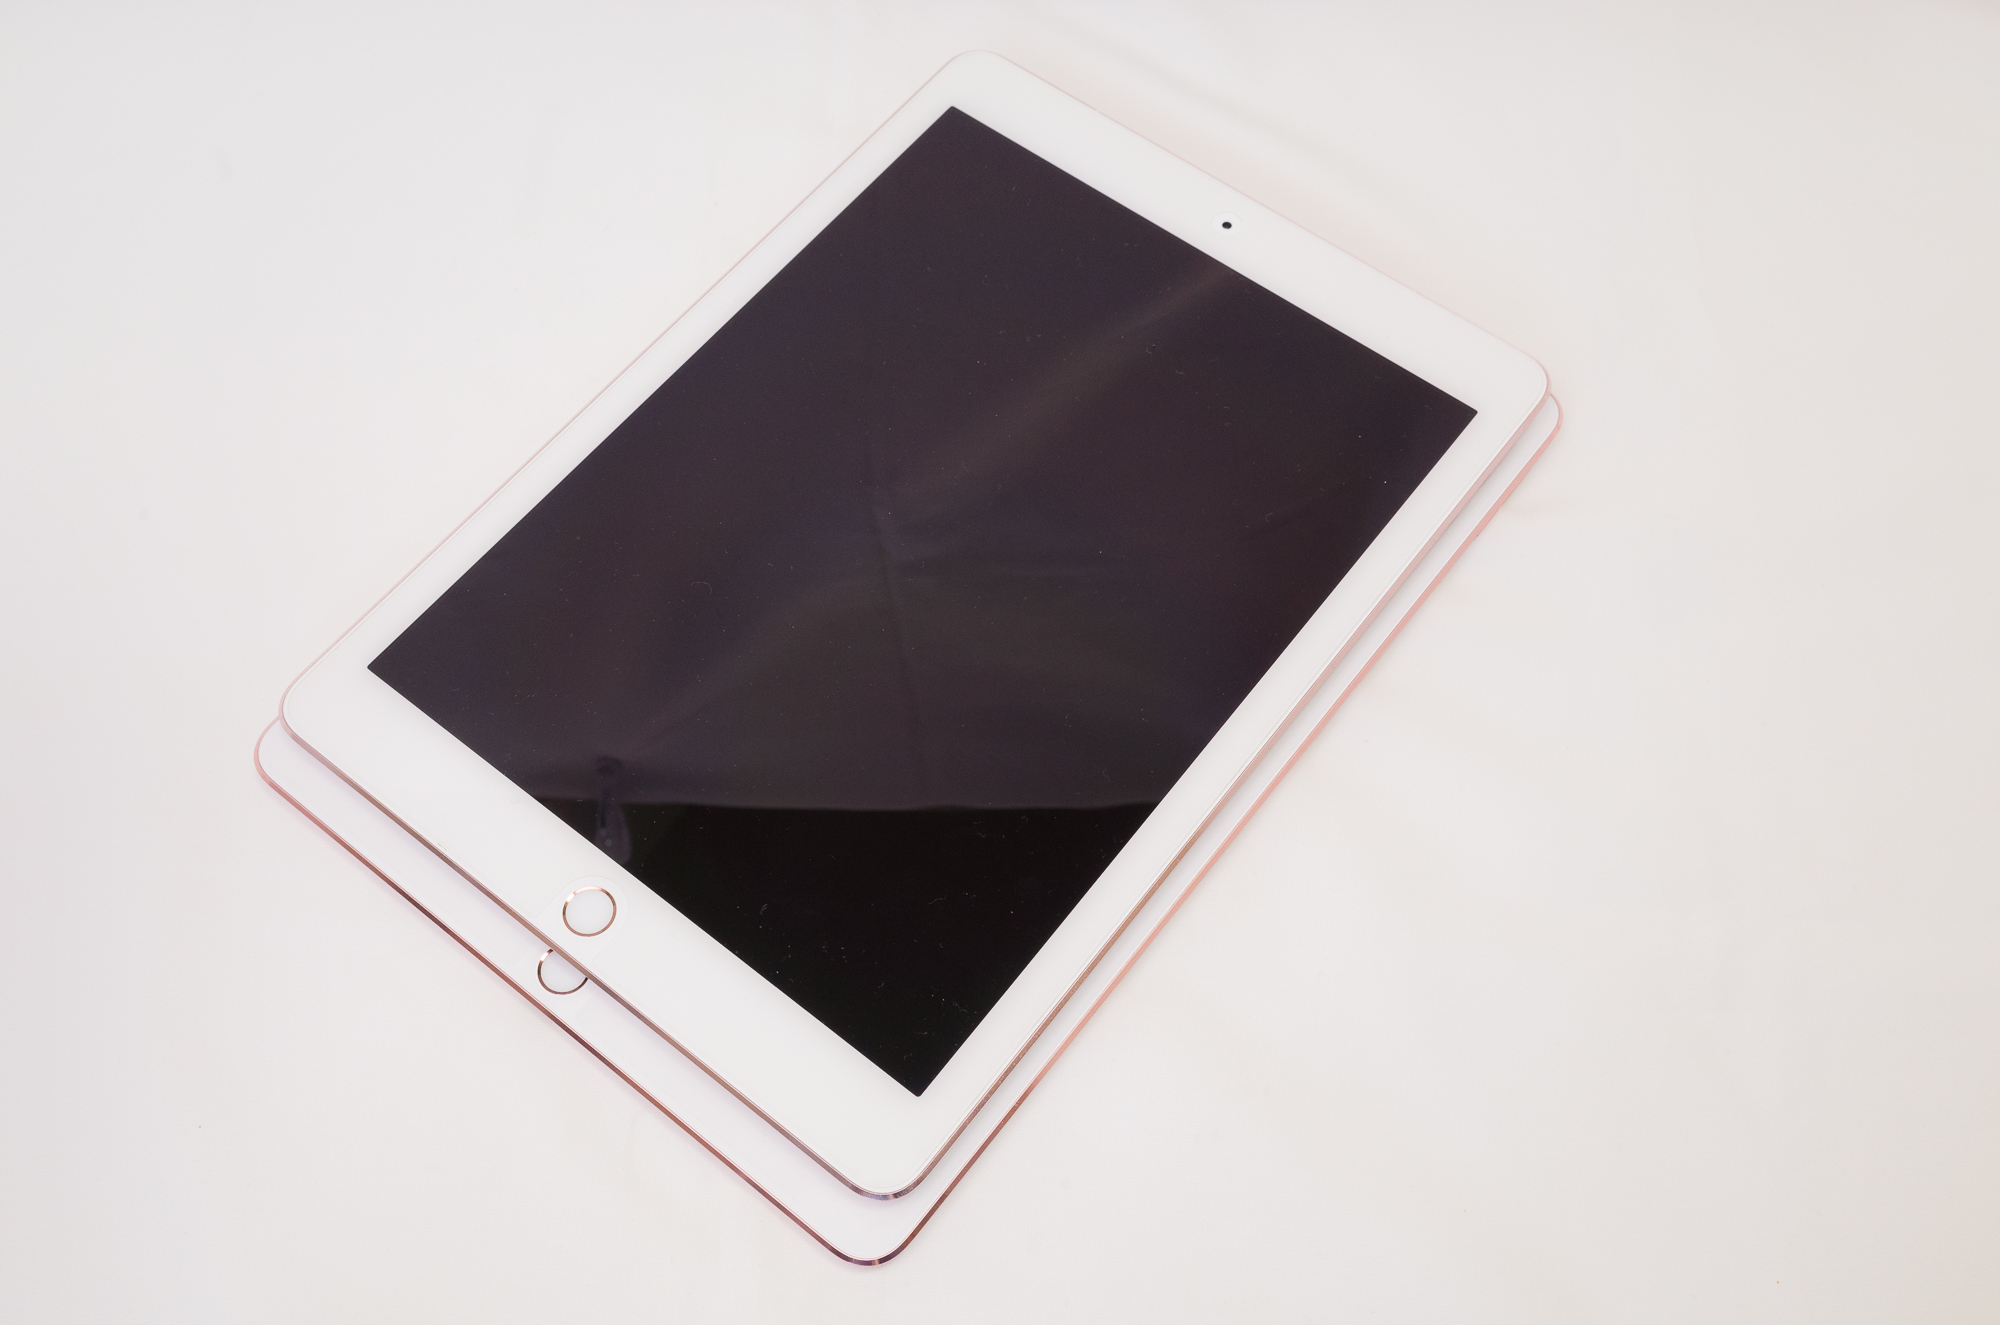 WiFi】iPad Pro 10.5 (64GB) ゴールド - タブレット